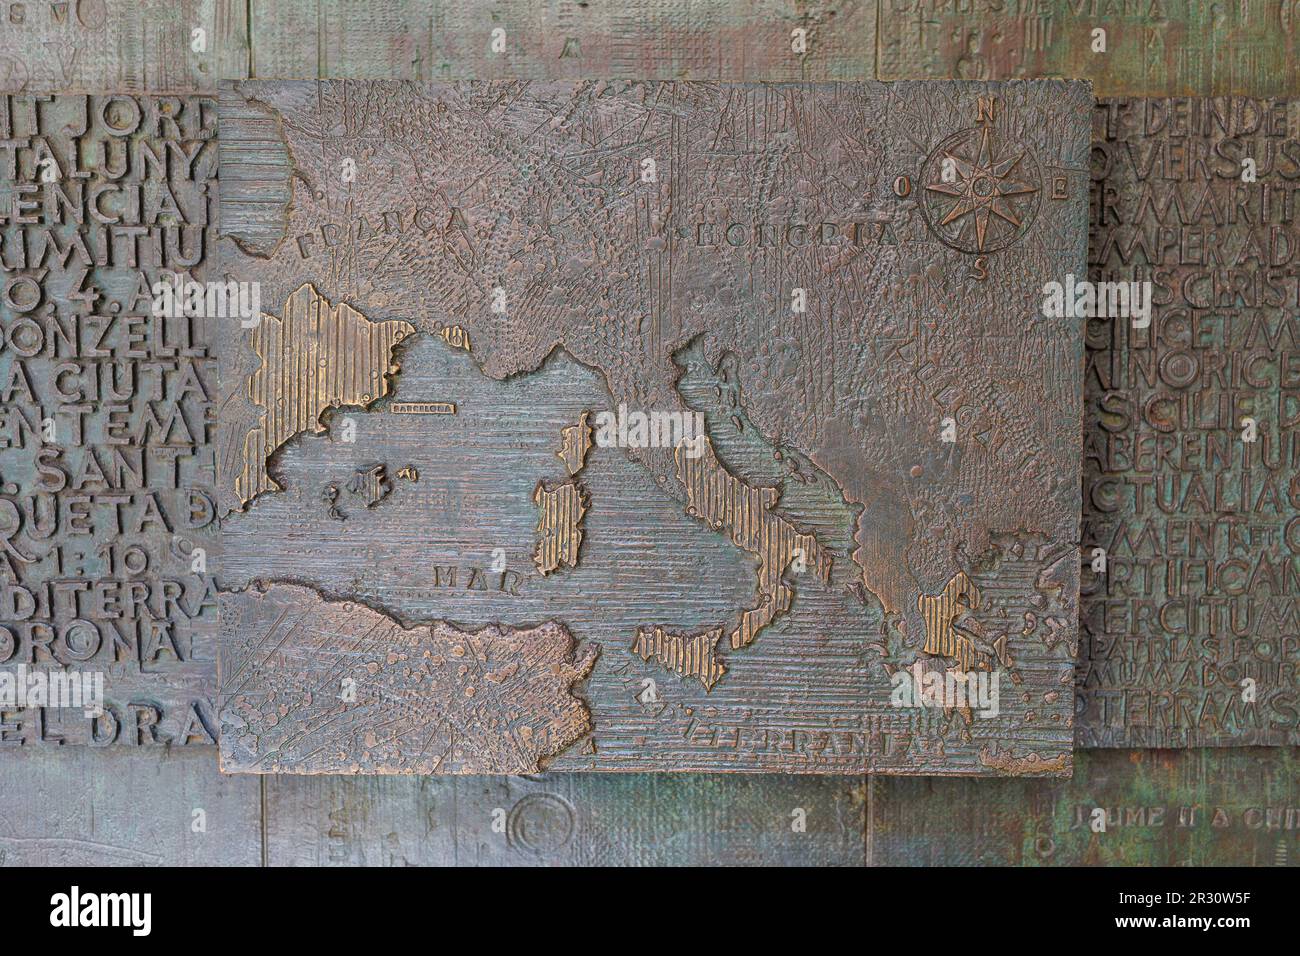 Mappa geografica dell'Europa in bassorilievo all'interno del cortile Palau del lloctinent, sede dell'Archivio di Stato e corona d'Aragona nel gotico N Foto Stock